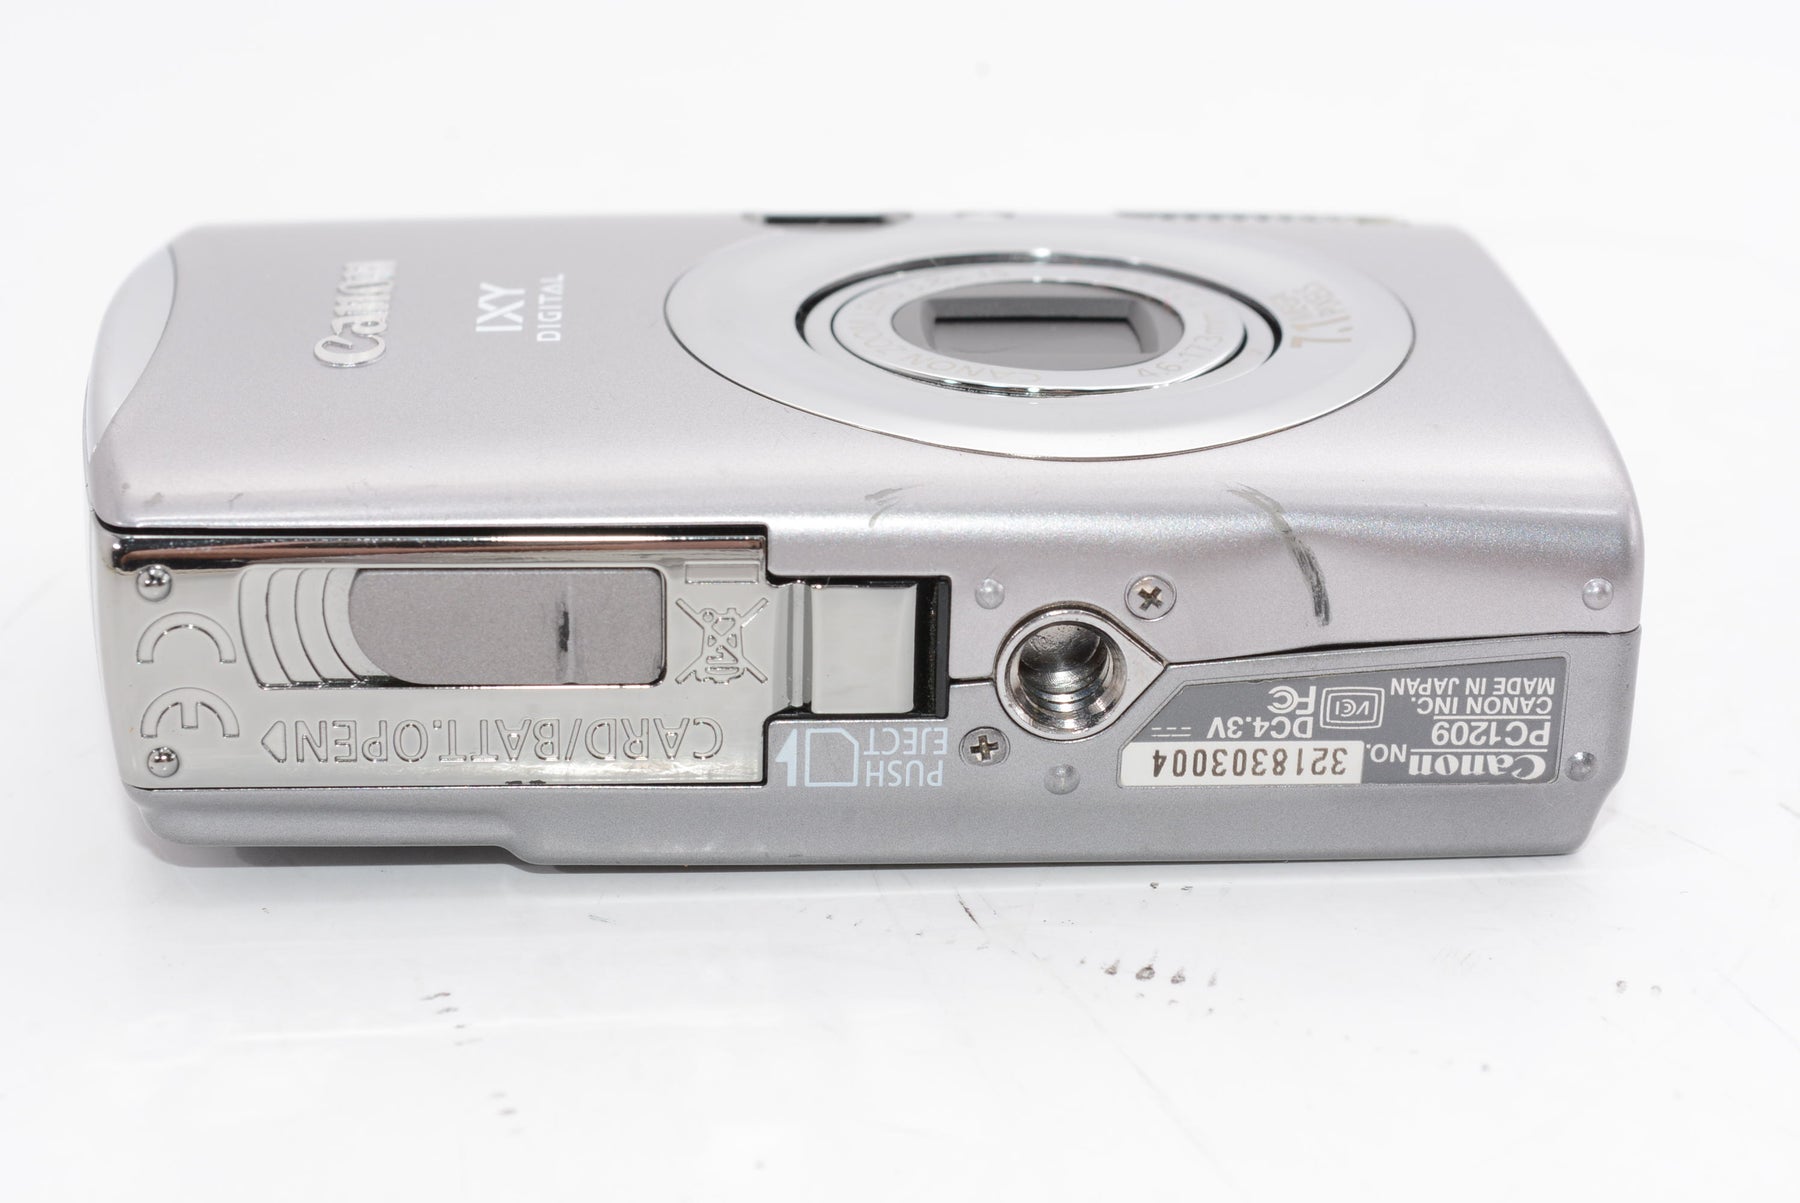 【外観特上級】Canon デジタルカメラ IXY (イクシ) DIGITAL 900 IS IXYD900IS